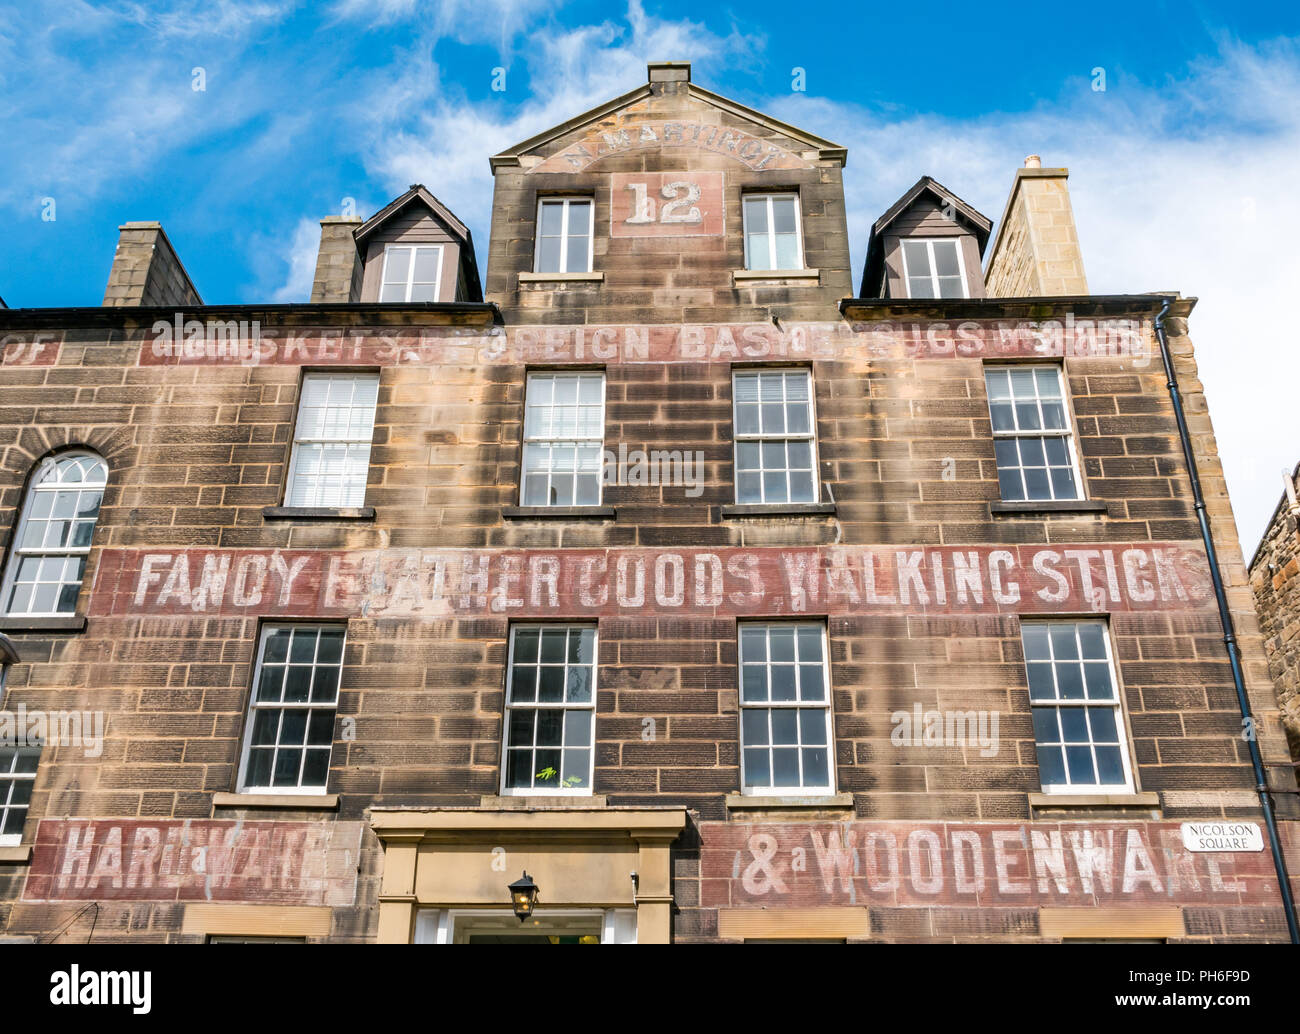 Universität von Edinburgh, Alison Haus, Reid Schule für Musik, Georgian Stadthaus mit alter Hardware Shop ghost Schriftzug Werbung fancy Waren Stockfoto